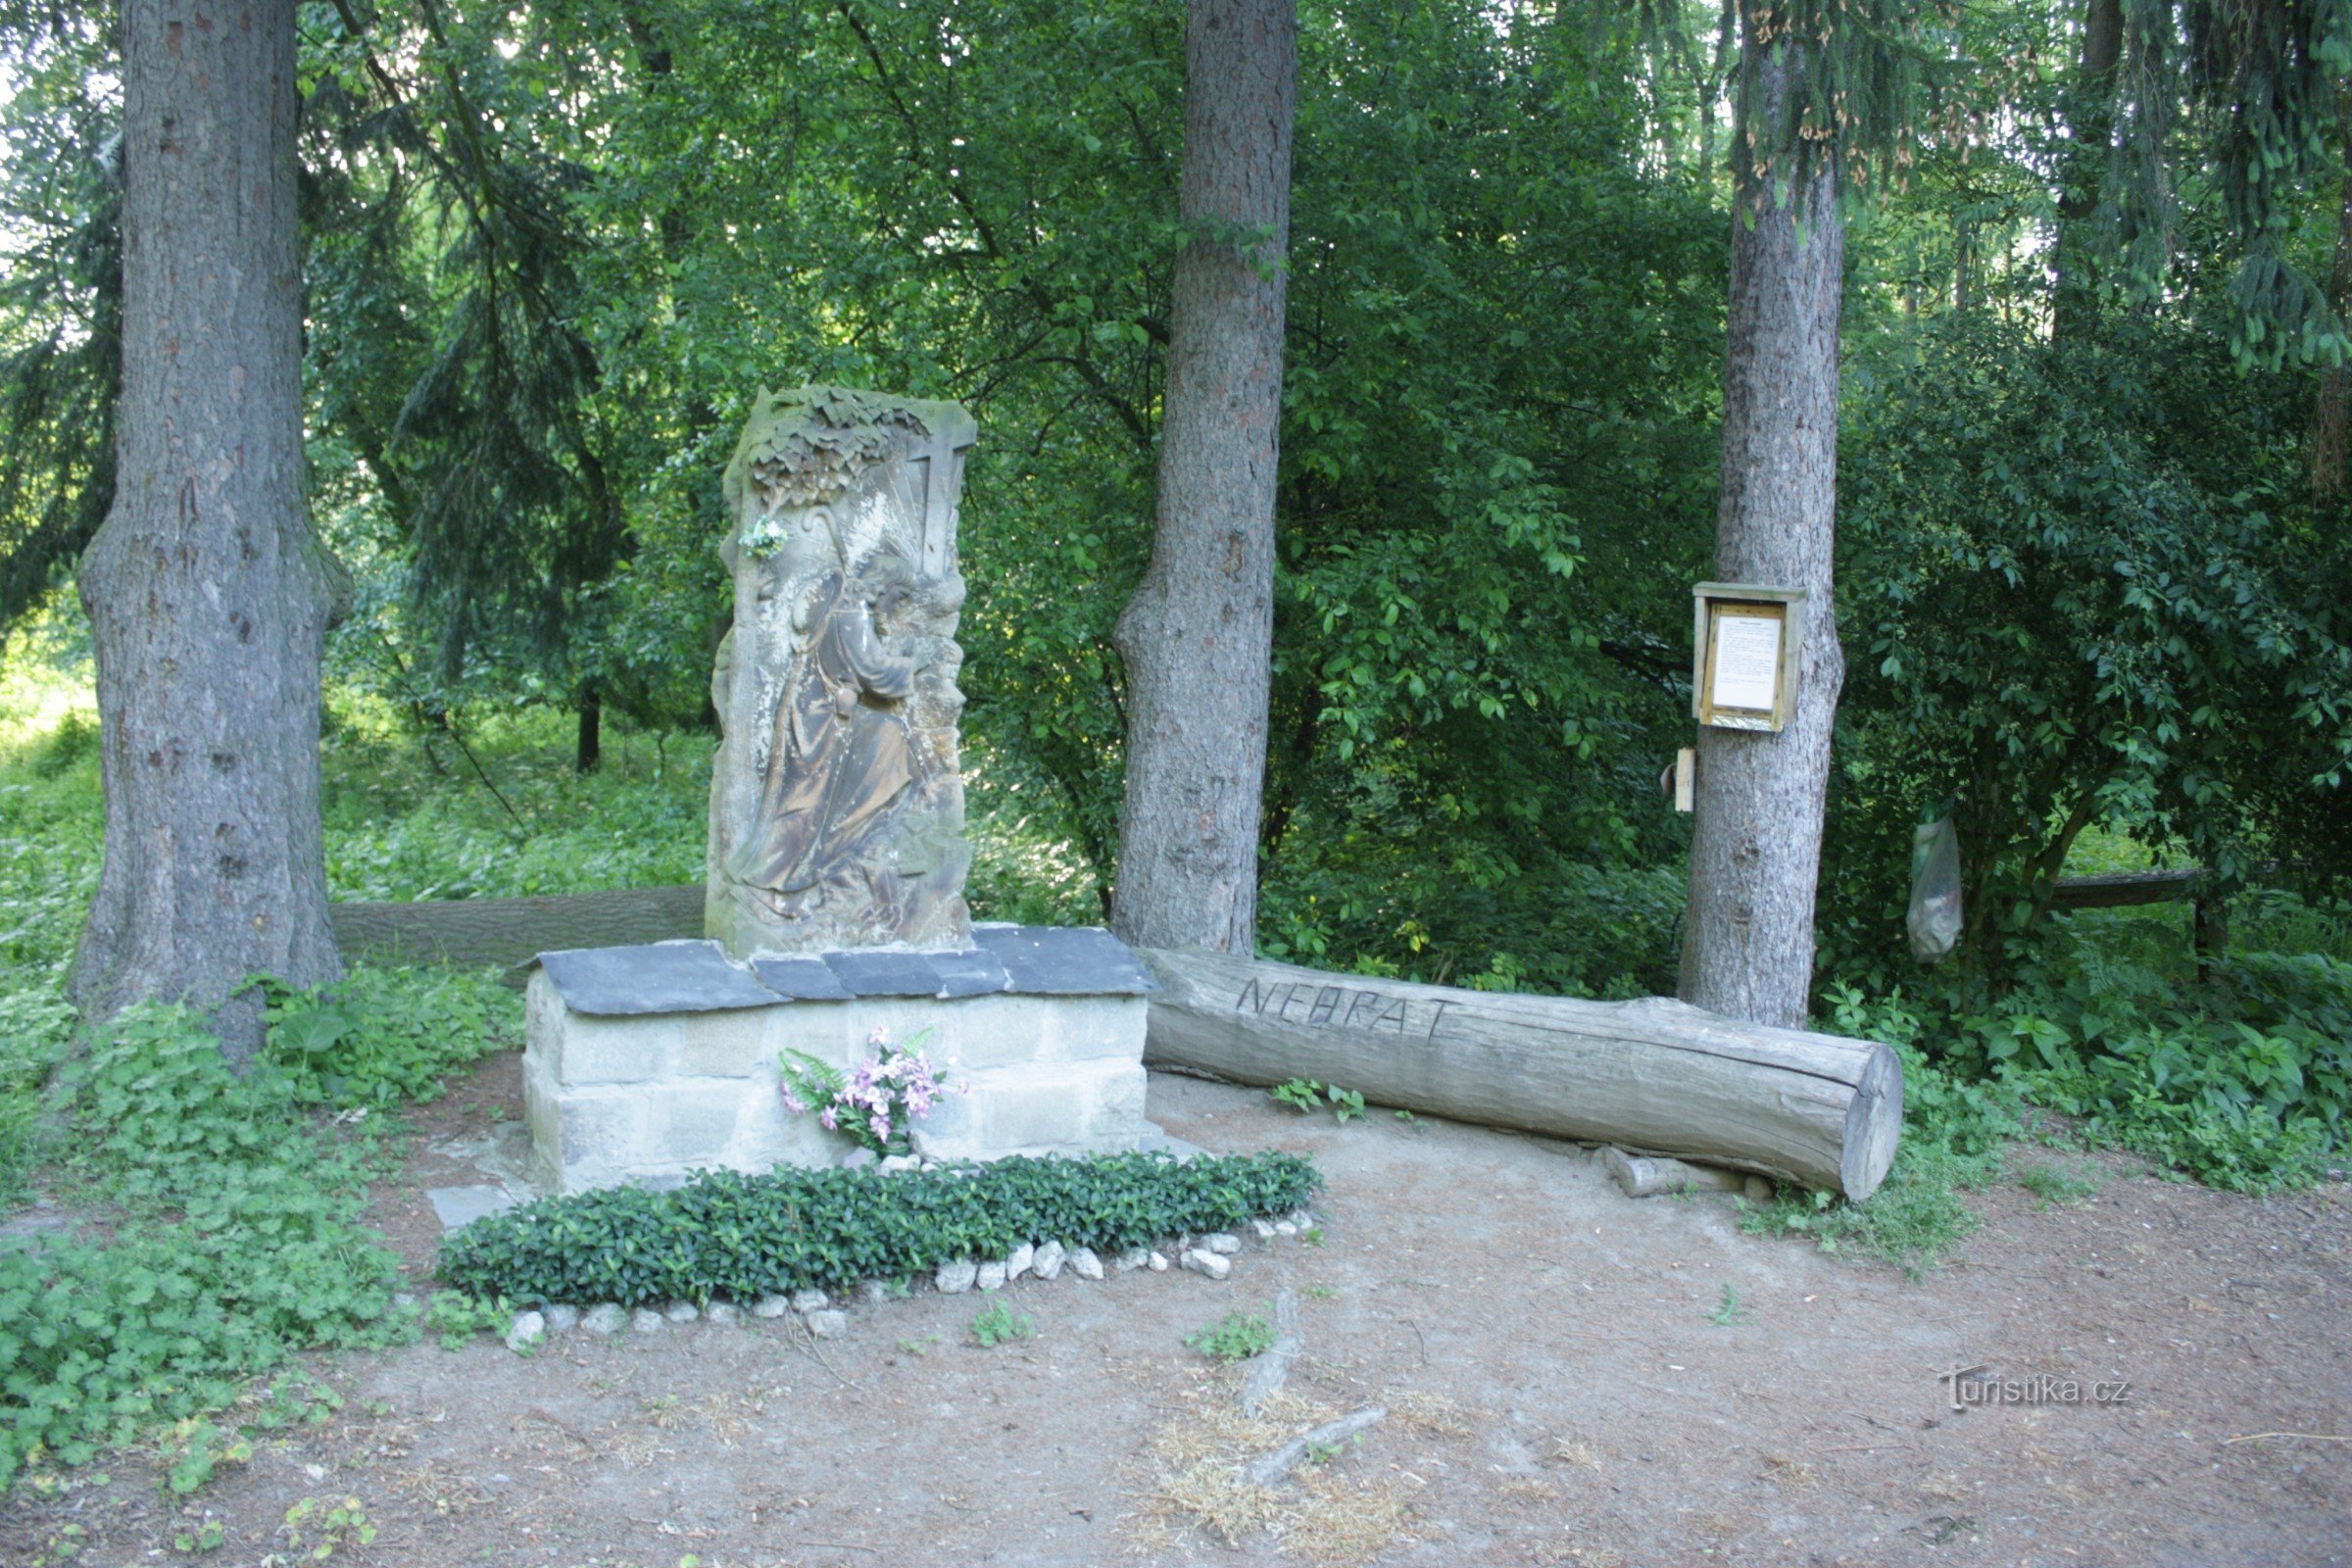 Relevo em pedra de S. Jakub na floresta de várzea perto de Kojetín